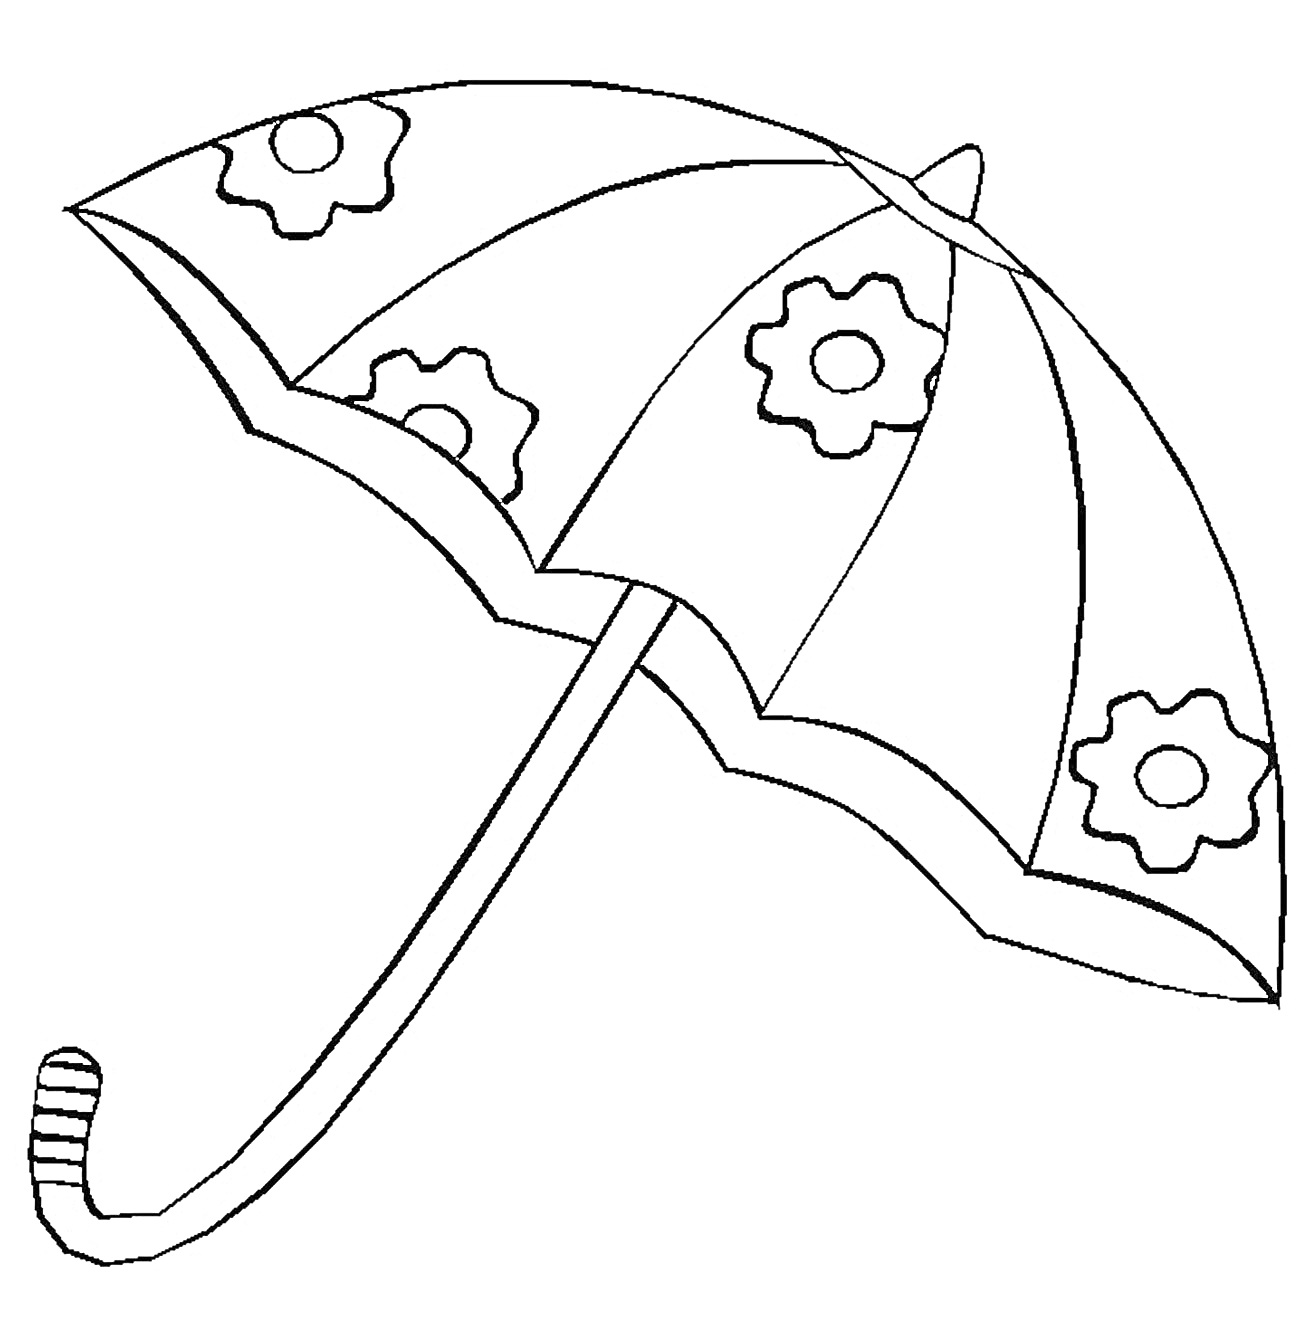 Раскраска Зонтик с узорами в виде цветочных шестеренок